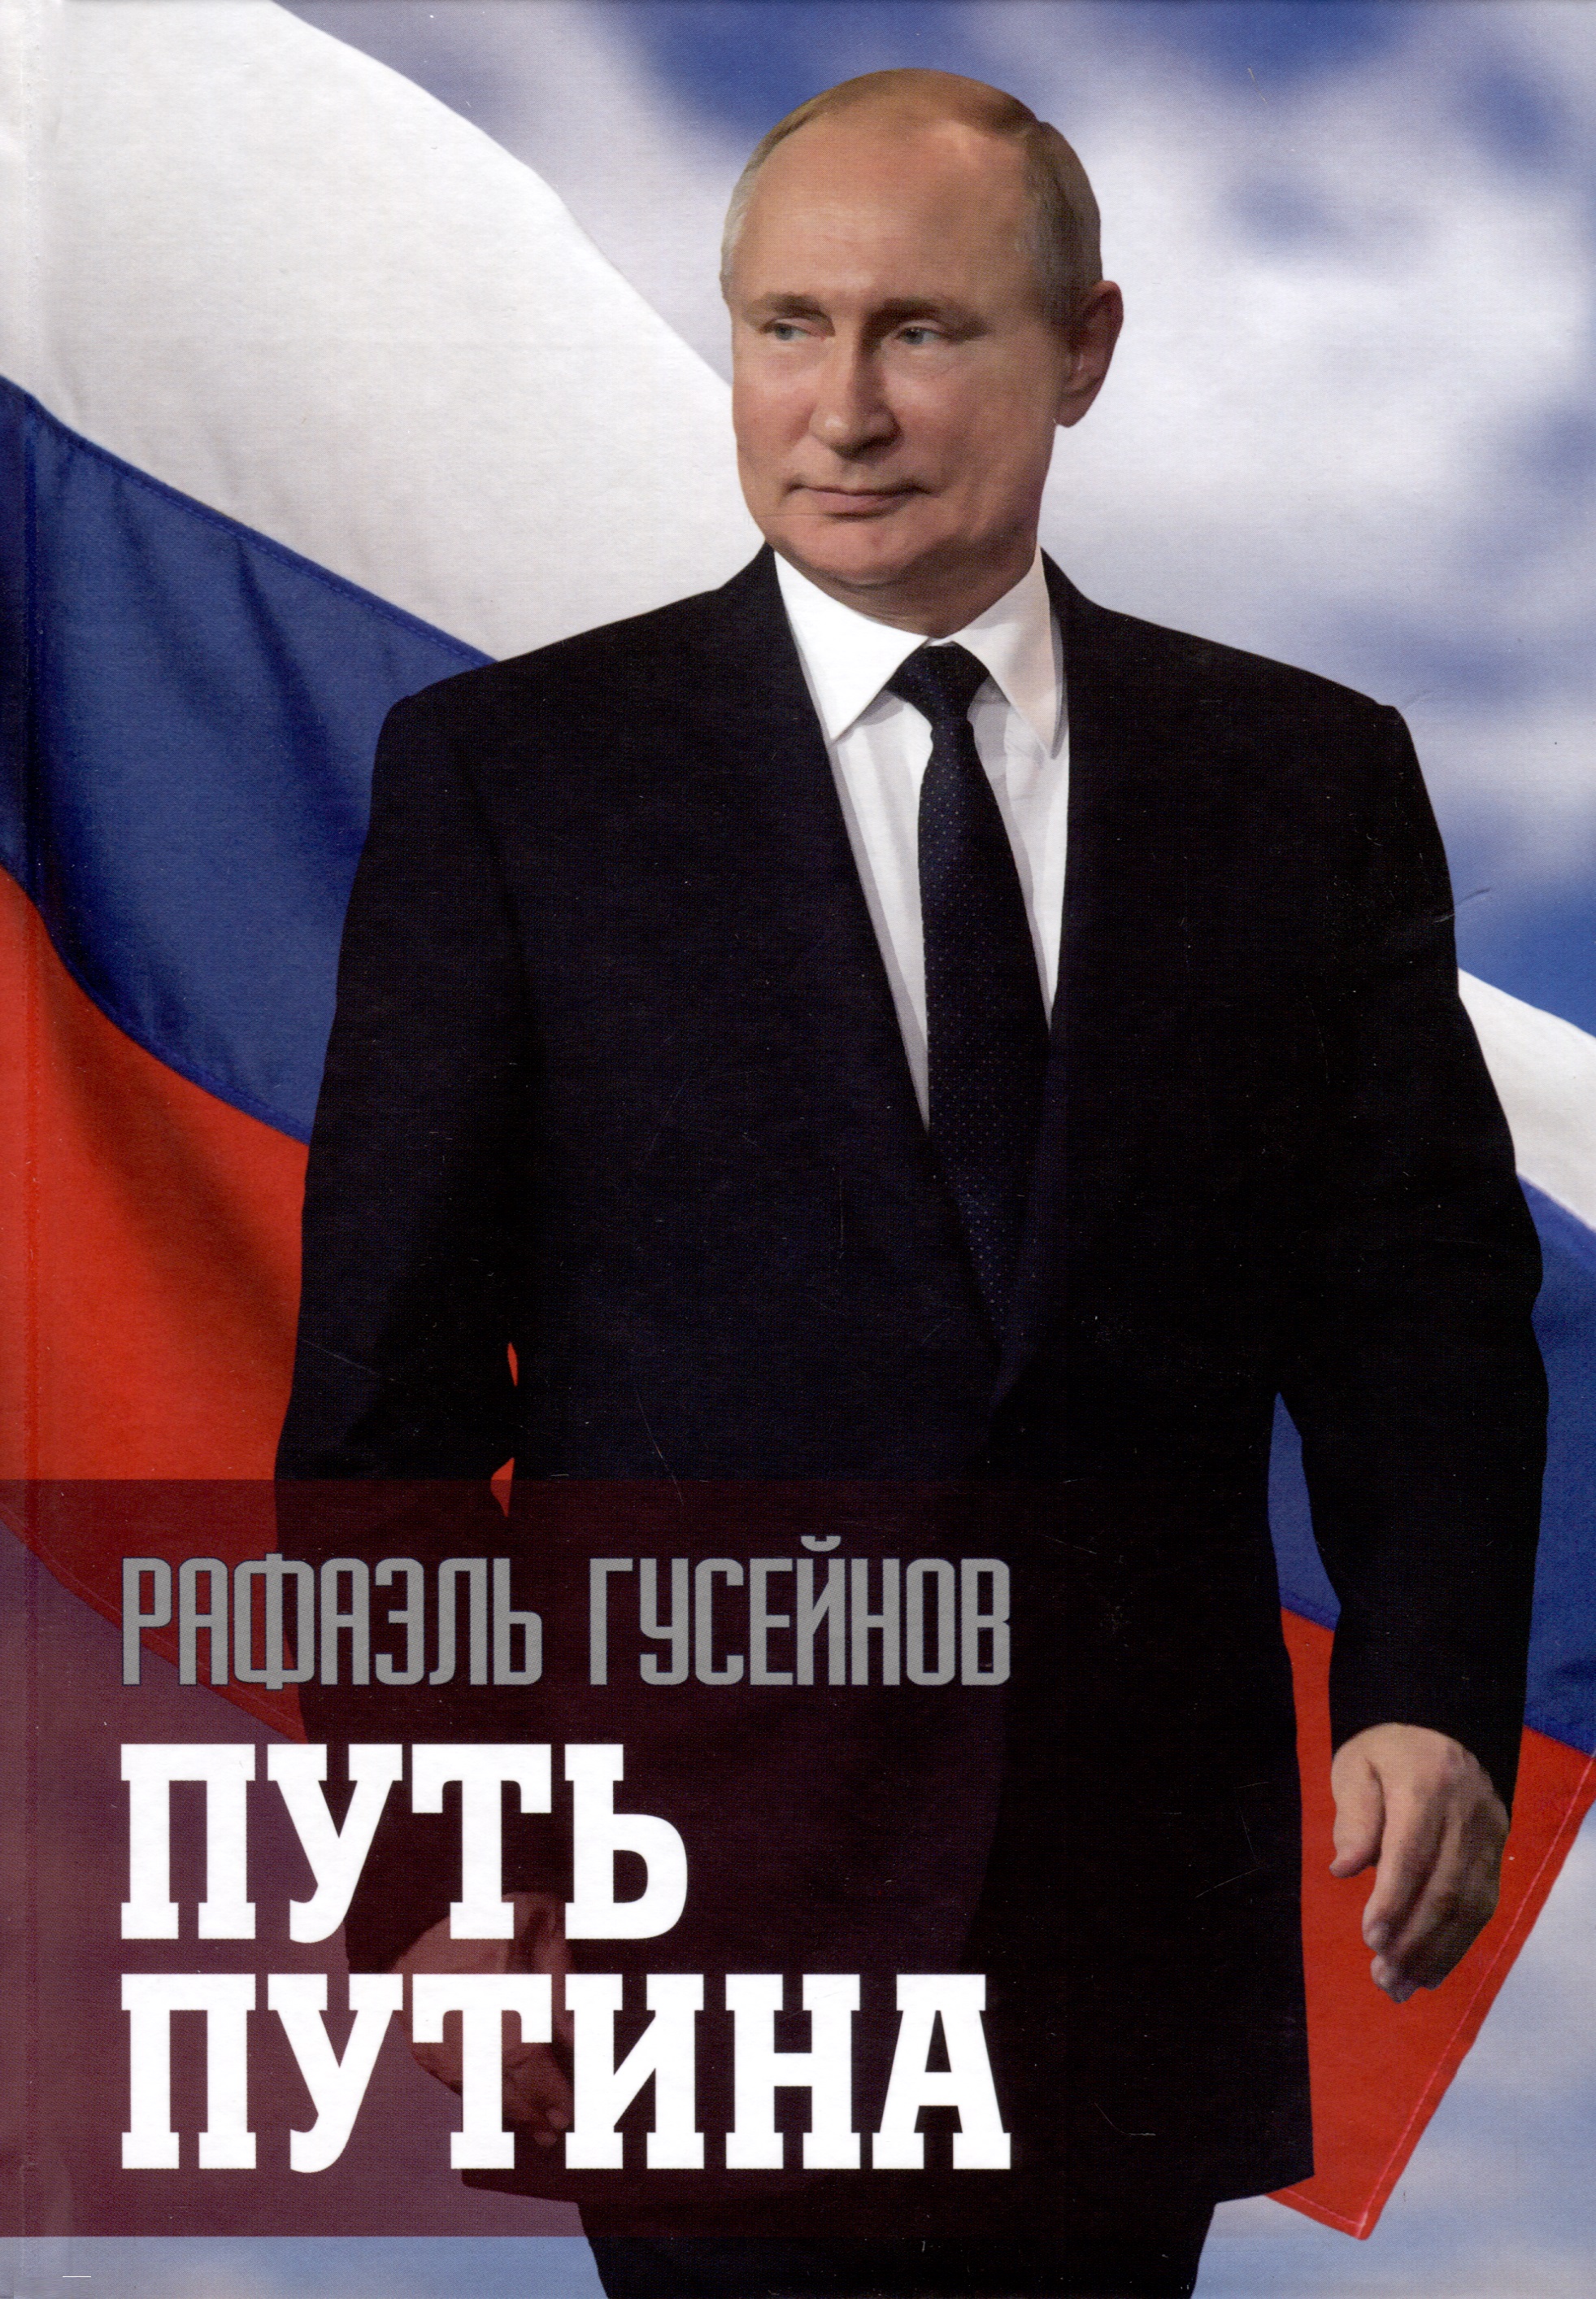 рубенс алена копираты xxi века роман о копирайтерах Путь Путина. О самом популярном политике XXI века